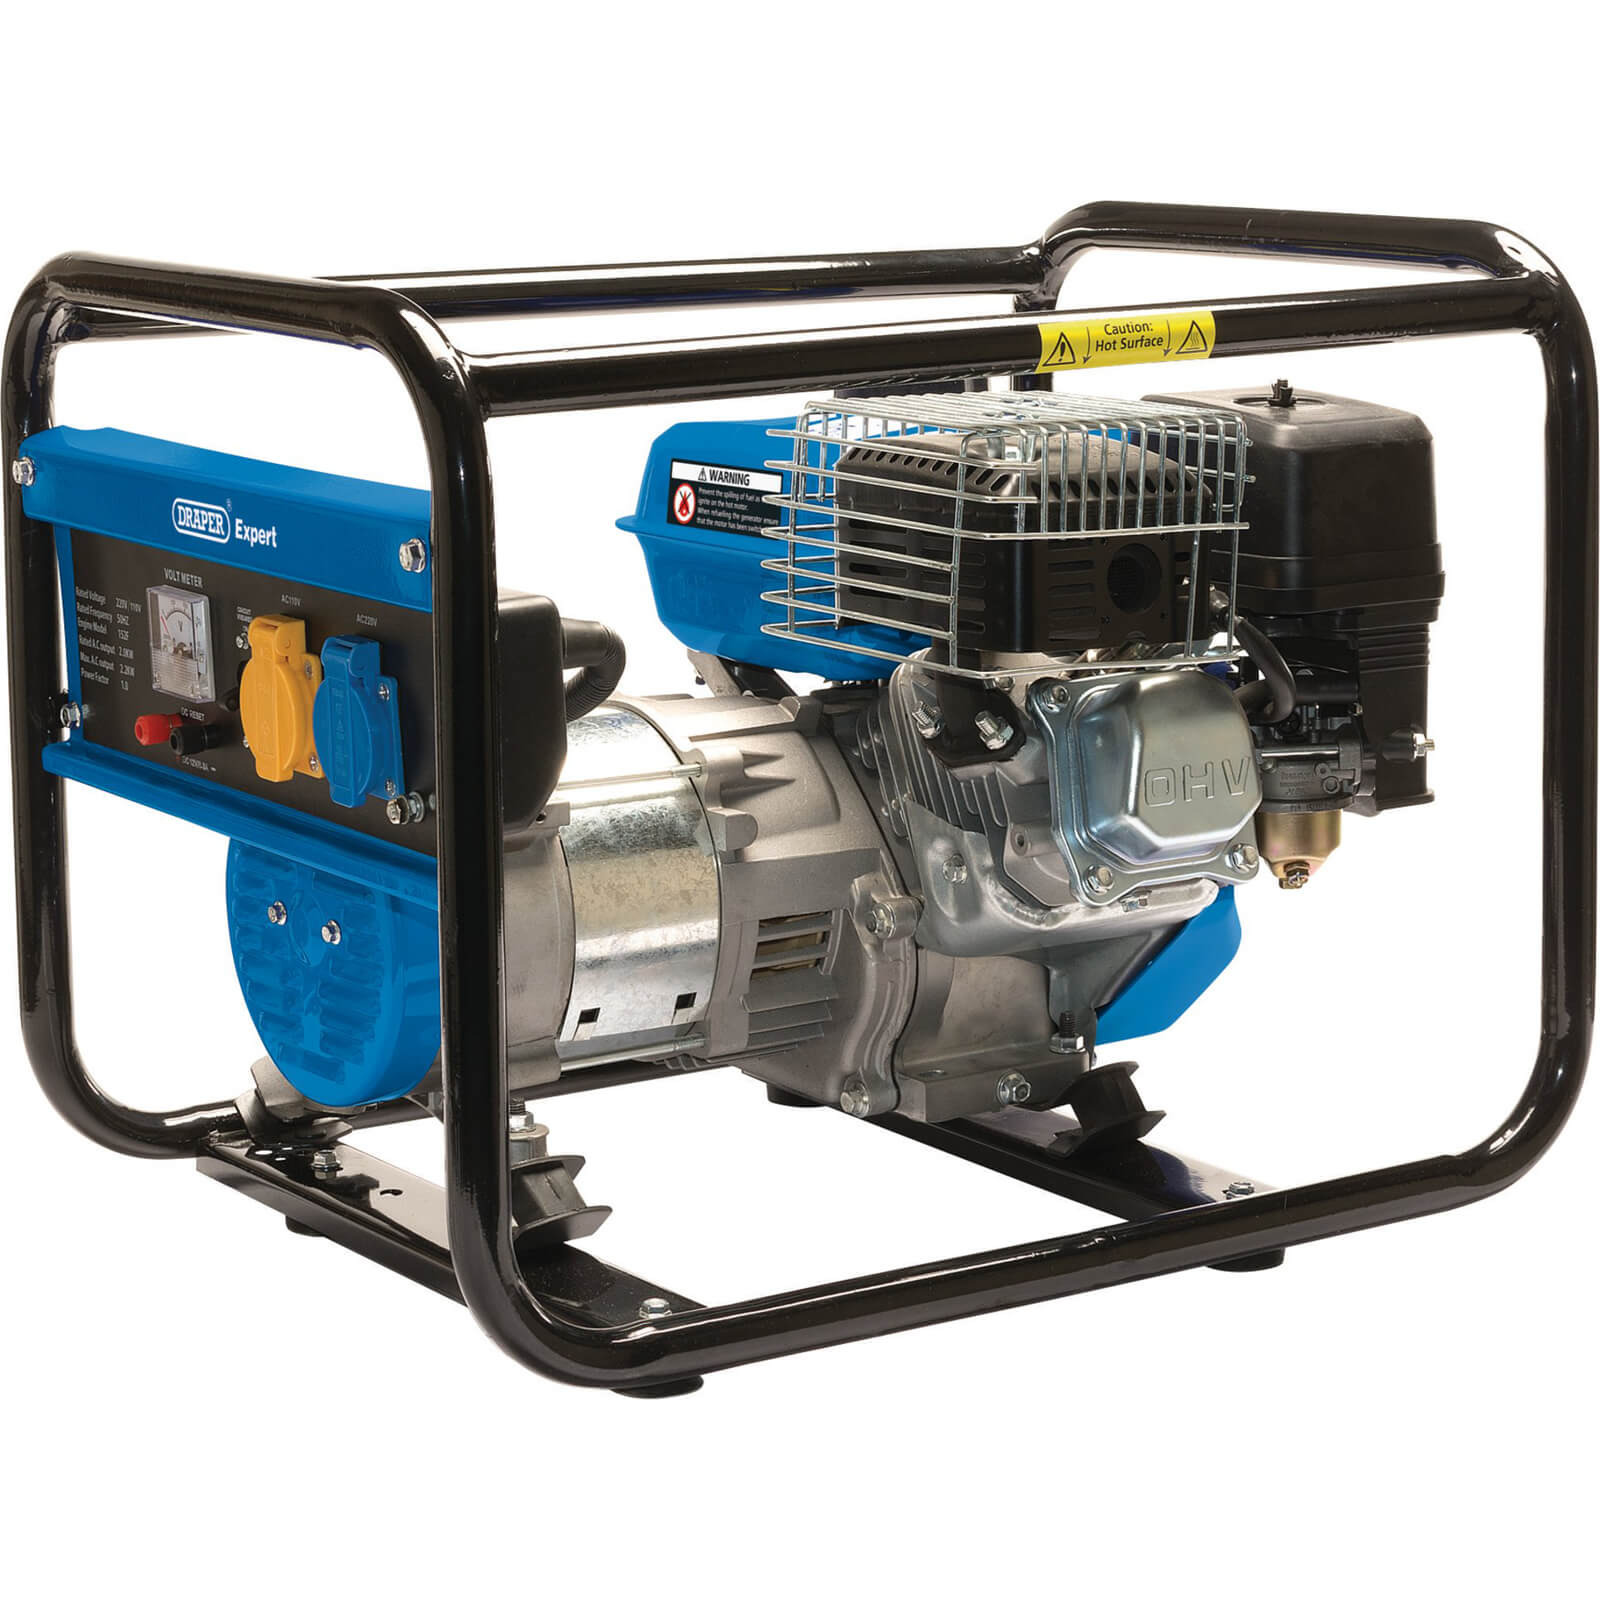 Image of Draper PG252F Petrol Generator 2.2Kva